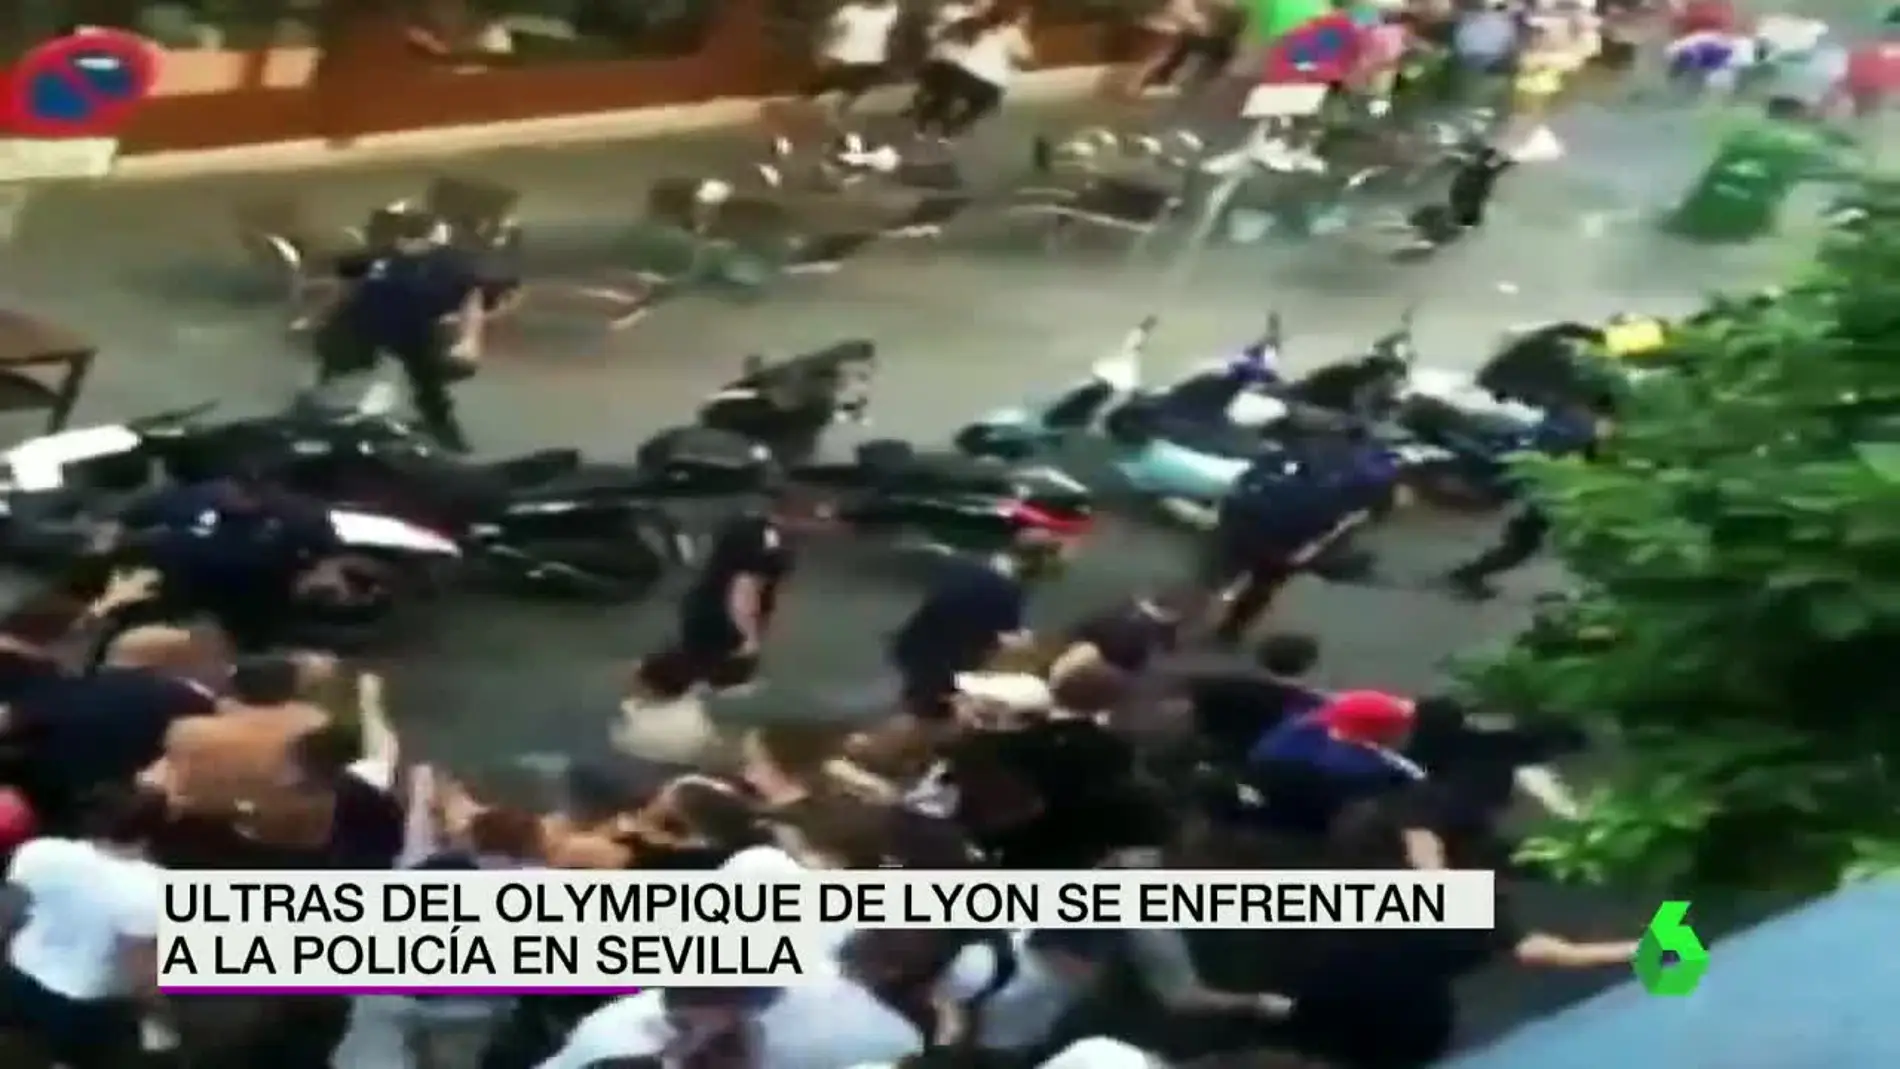 Batalla campal en el centro de Sevilla entre la policía y ultras del Lyon.